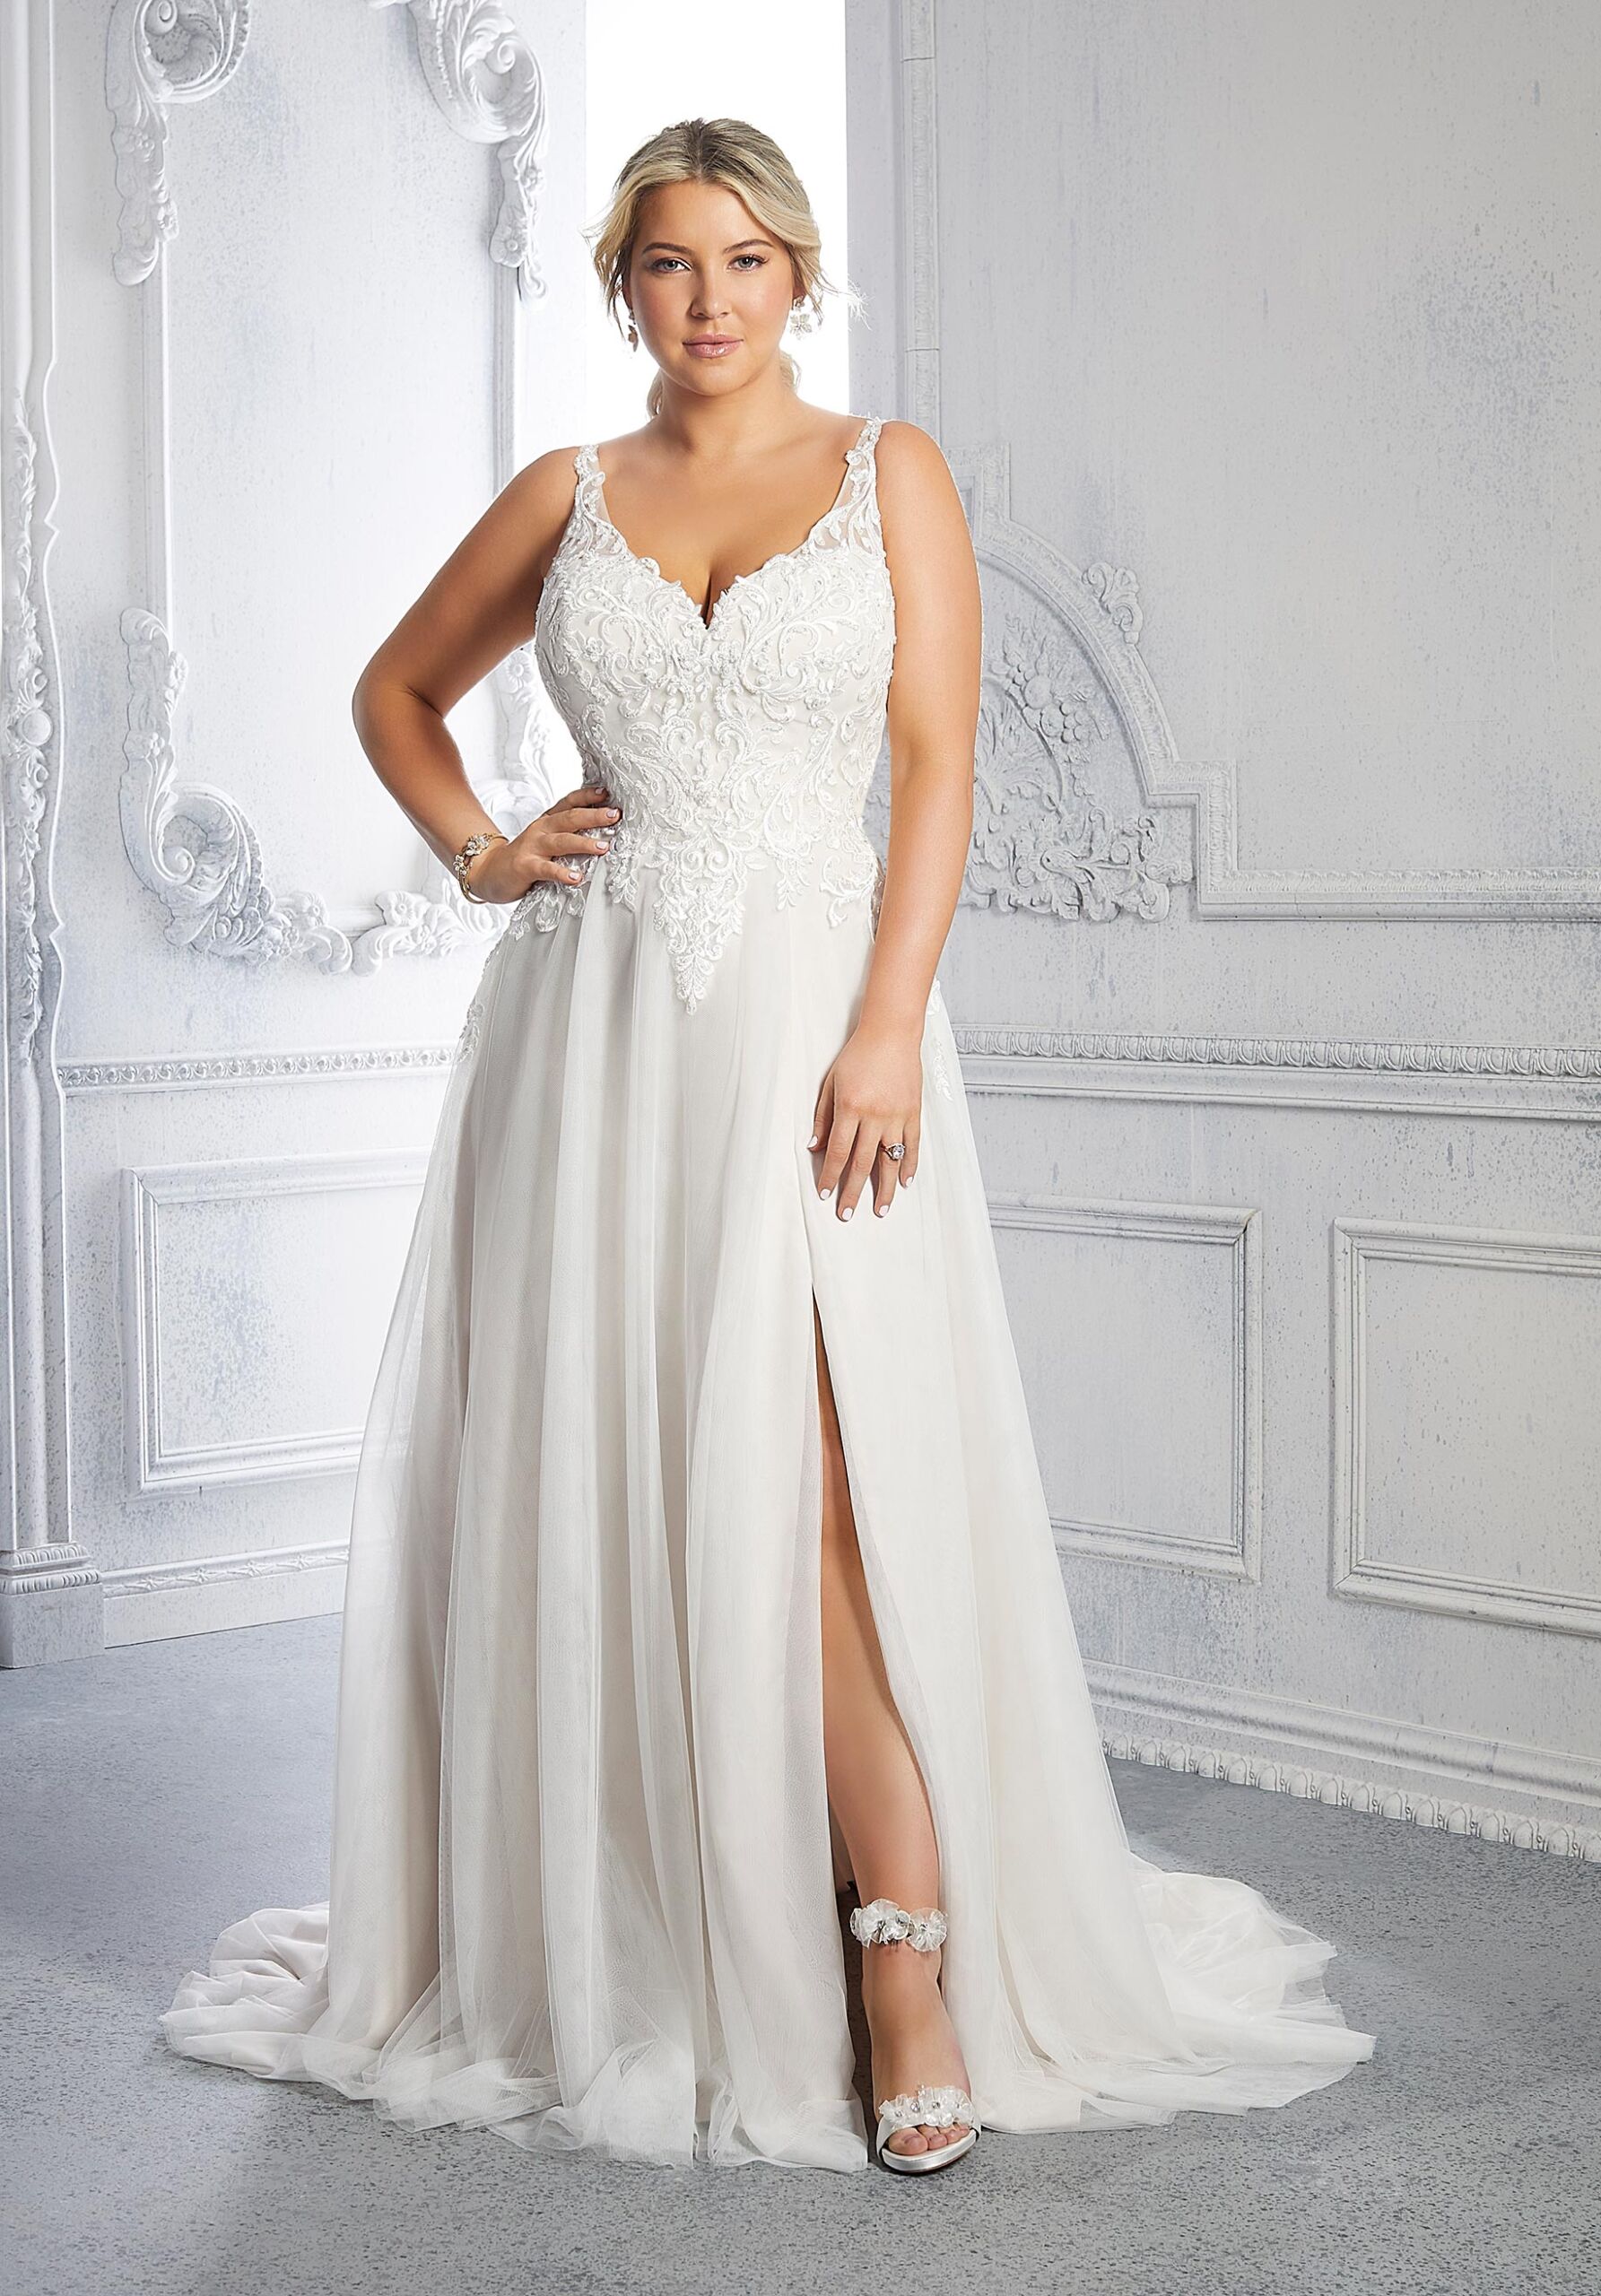 Plus Size Bridal Shop Sacramento, Plus Size Wedding Gowns | SPARKLE bridal  couture